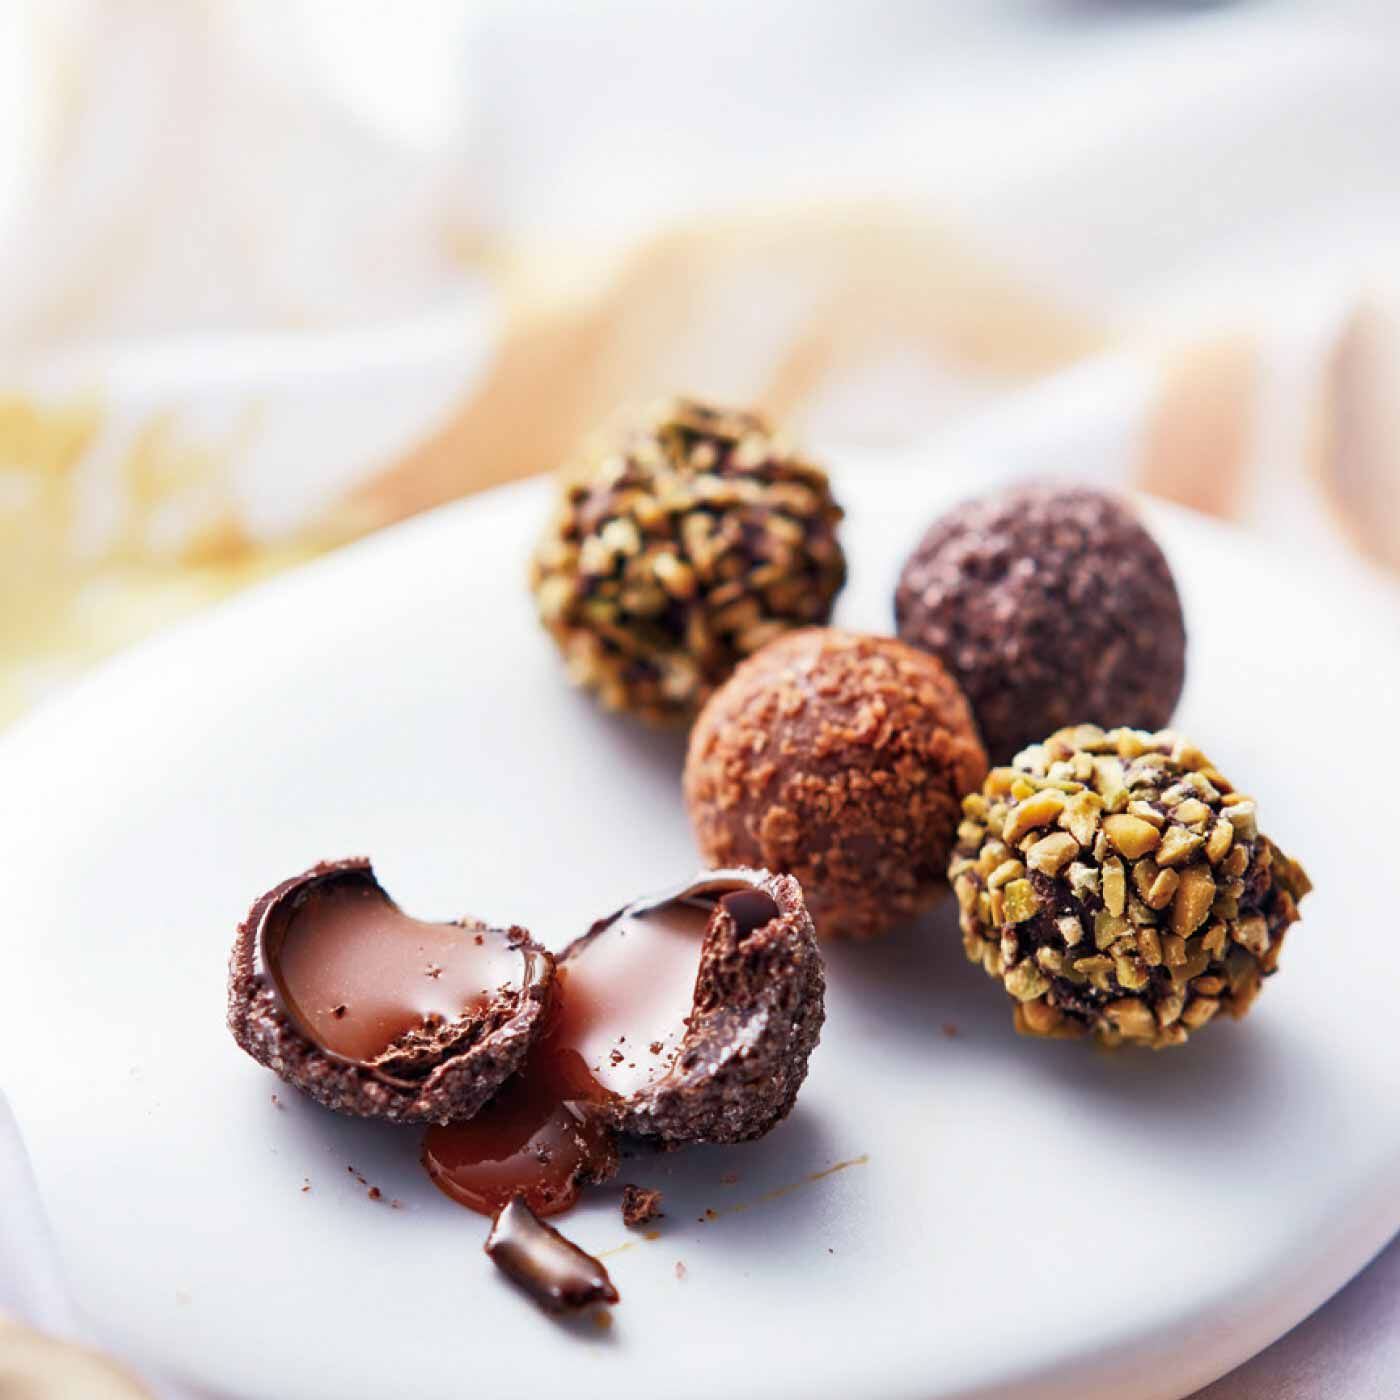 クチュリエ|「幸福（しあわせ）のチョコレート」とコラボ 樹脂粘土で作る 食べられないチョコレートの会|「幸福（しあわせ）のチョコレート」の大人気チョコレート。パリの老舗チョコレート店「ROY（ロワ）」とコラボして作りました。